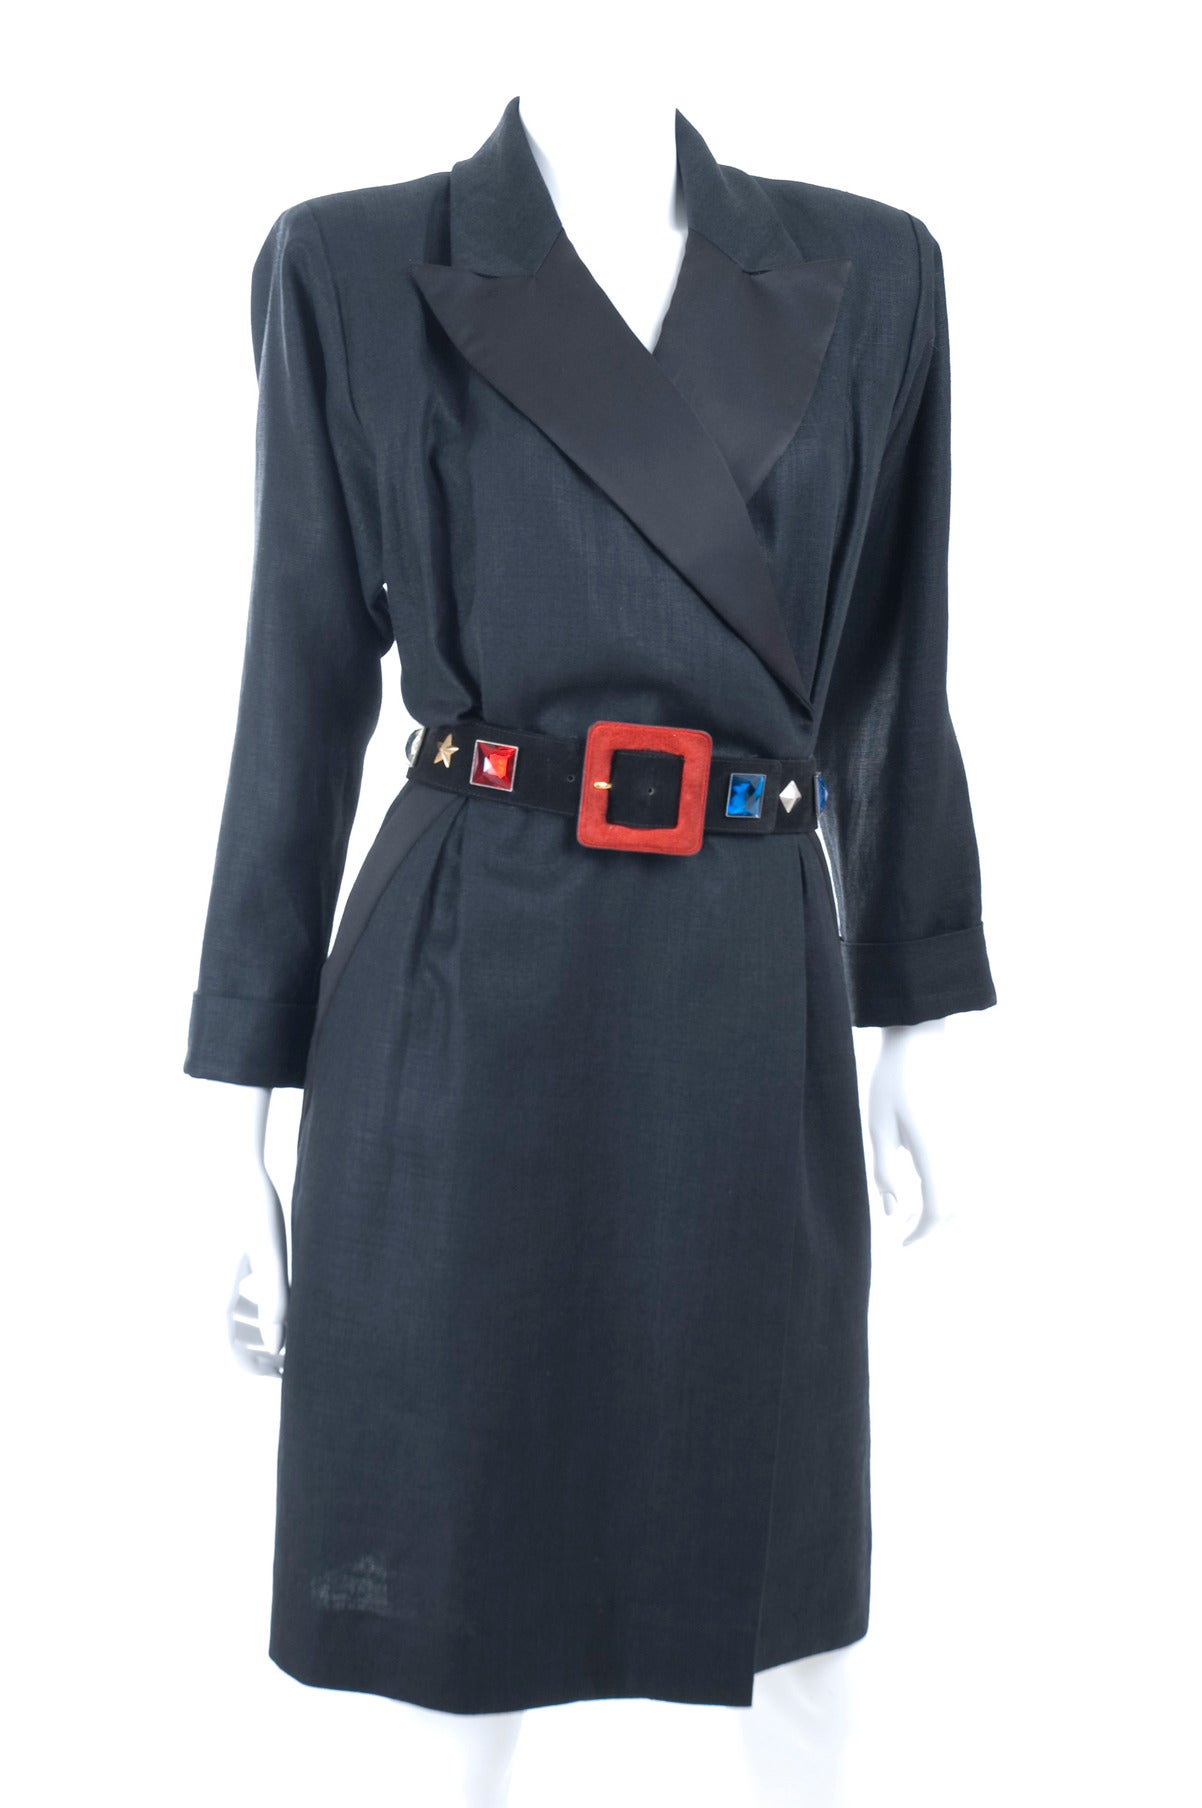 90's Yves Saint Laurent Tuxedo Linen Dress with Belt.
Black linen with black satin details.
Size EU 44
Excellent condition.
Measurements:
Length 40 - bust 38 - waist 30 inches